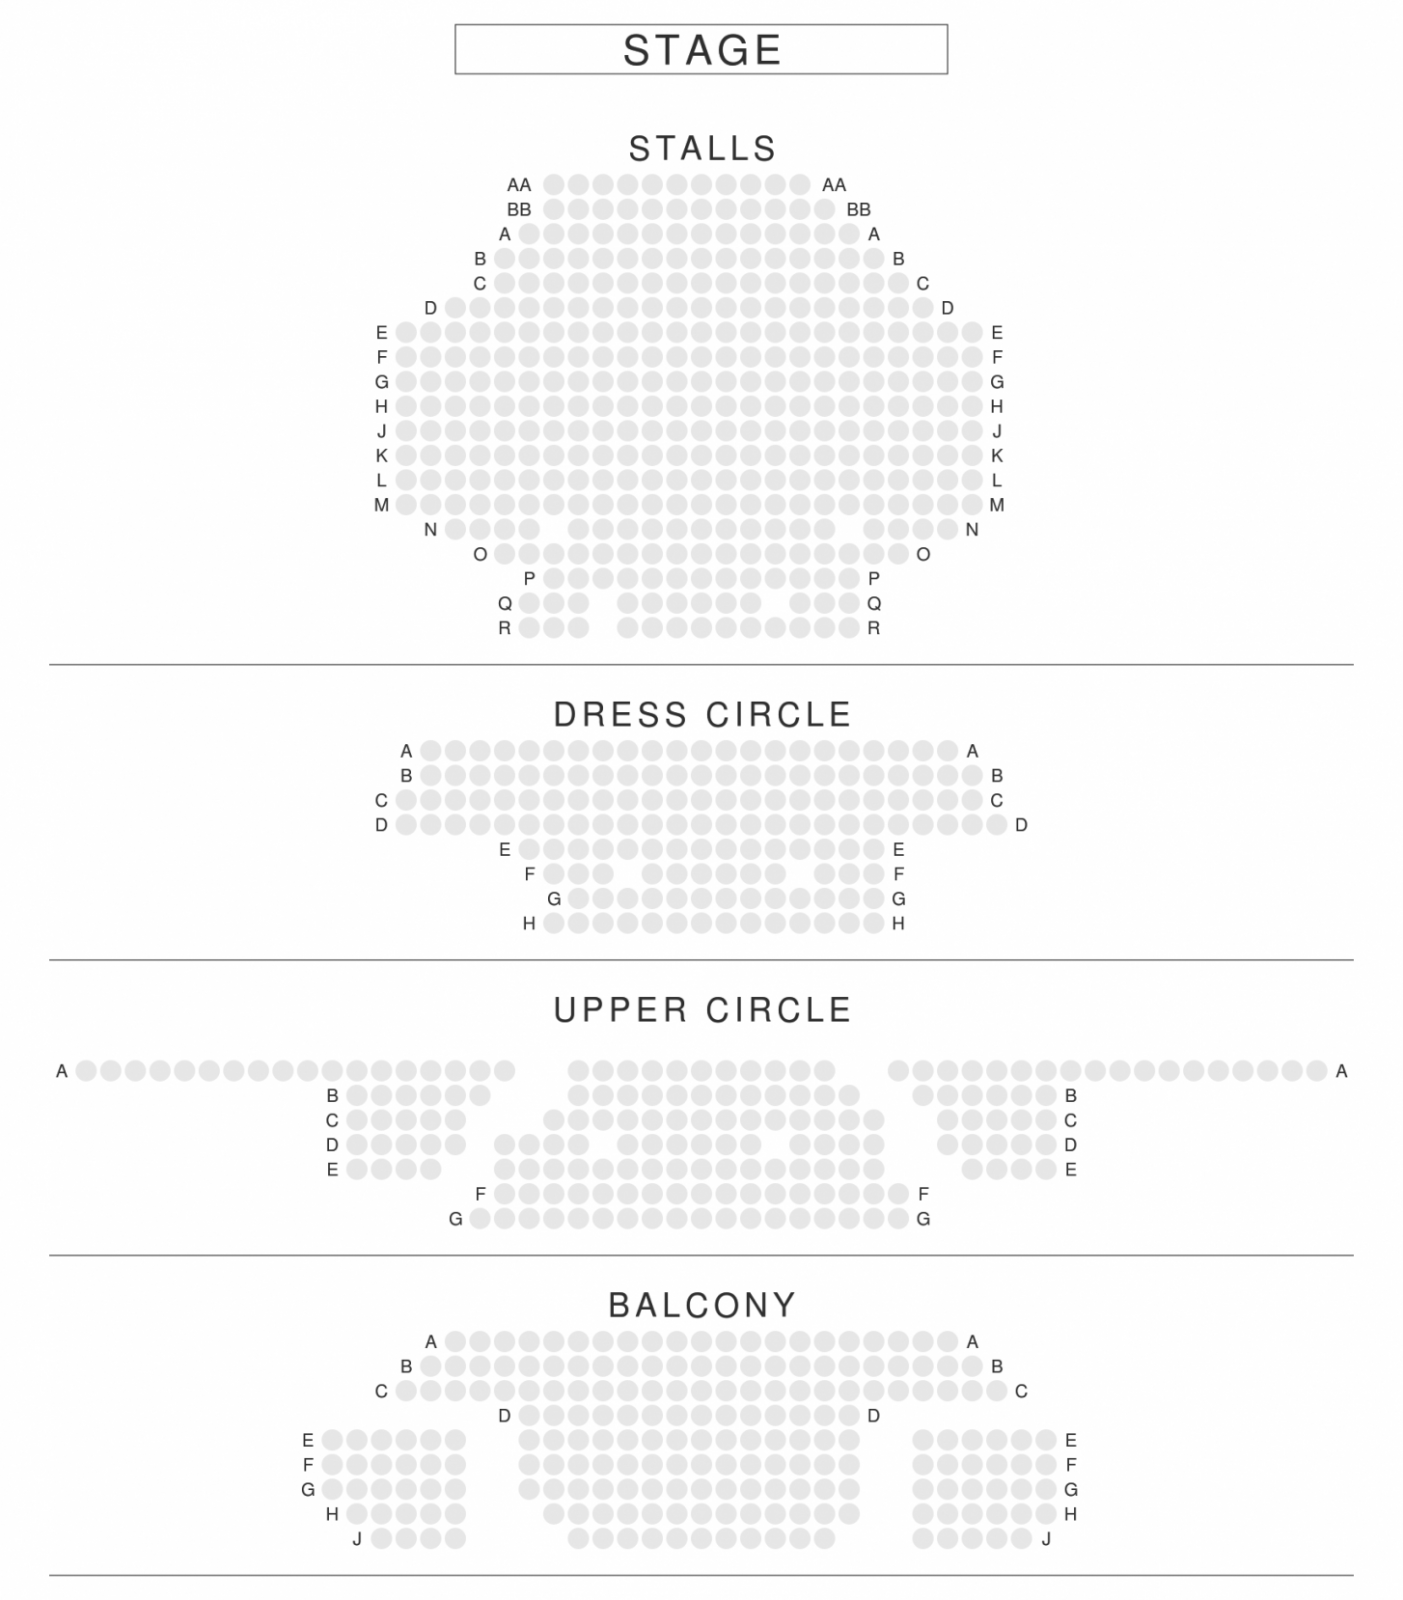 Lyric Theatre London Seating Plan &amp; Reviews  Seatplan von Lyric Opera Seating Chart Photo